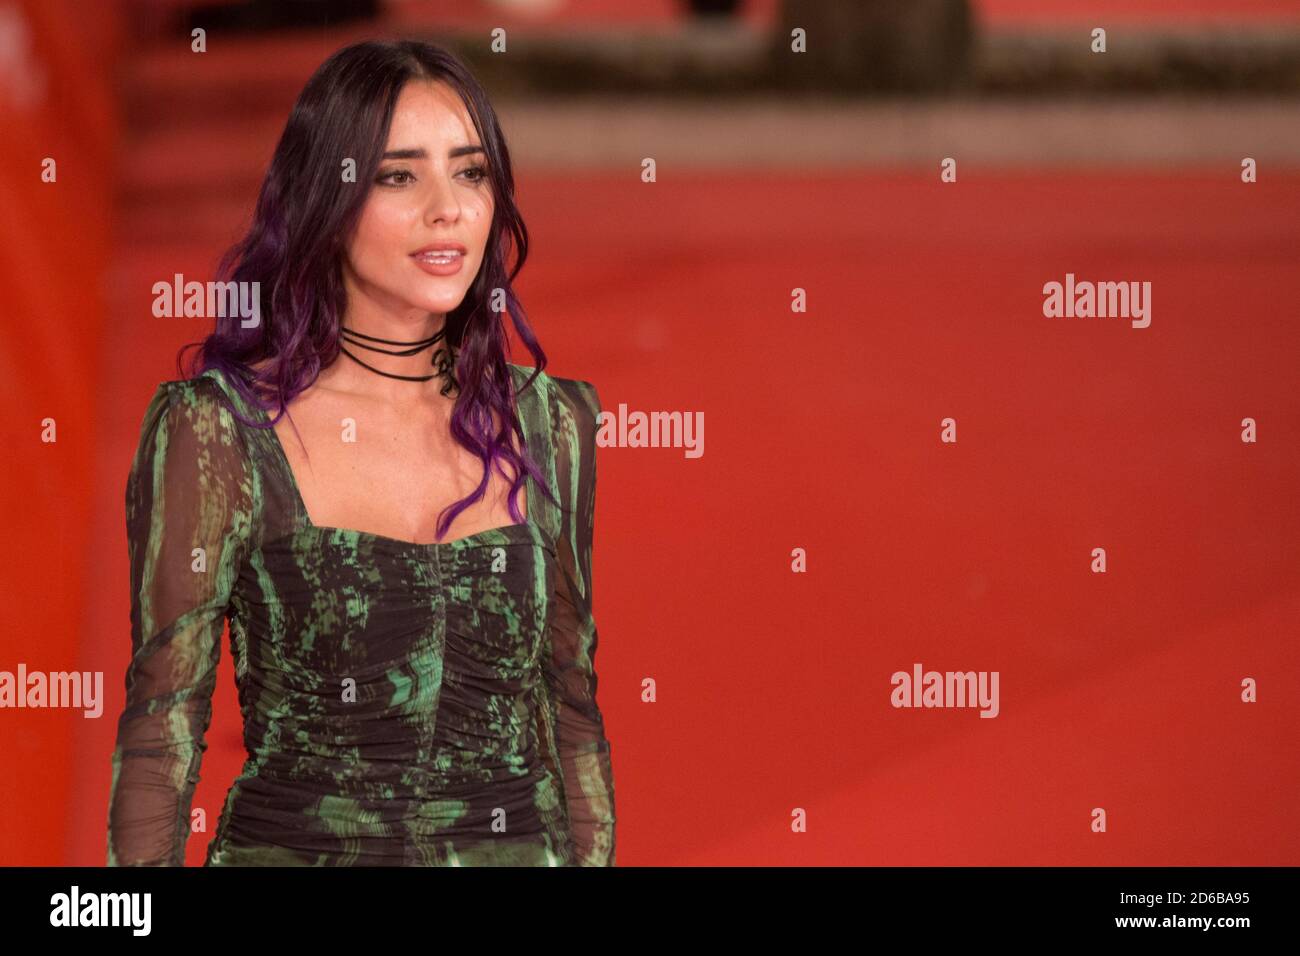 Roma, Italia. 15 de octubre de 2020. La cantante italiana Giulia Penna en  Red Carpet de la primera noche del Festival de Cine de Roma 2020, el 15 de  octubre de 2015 (